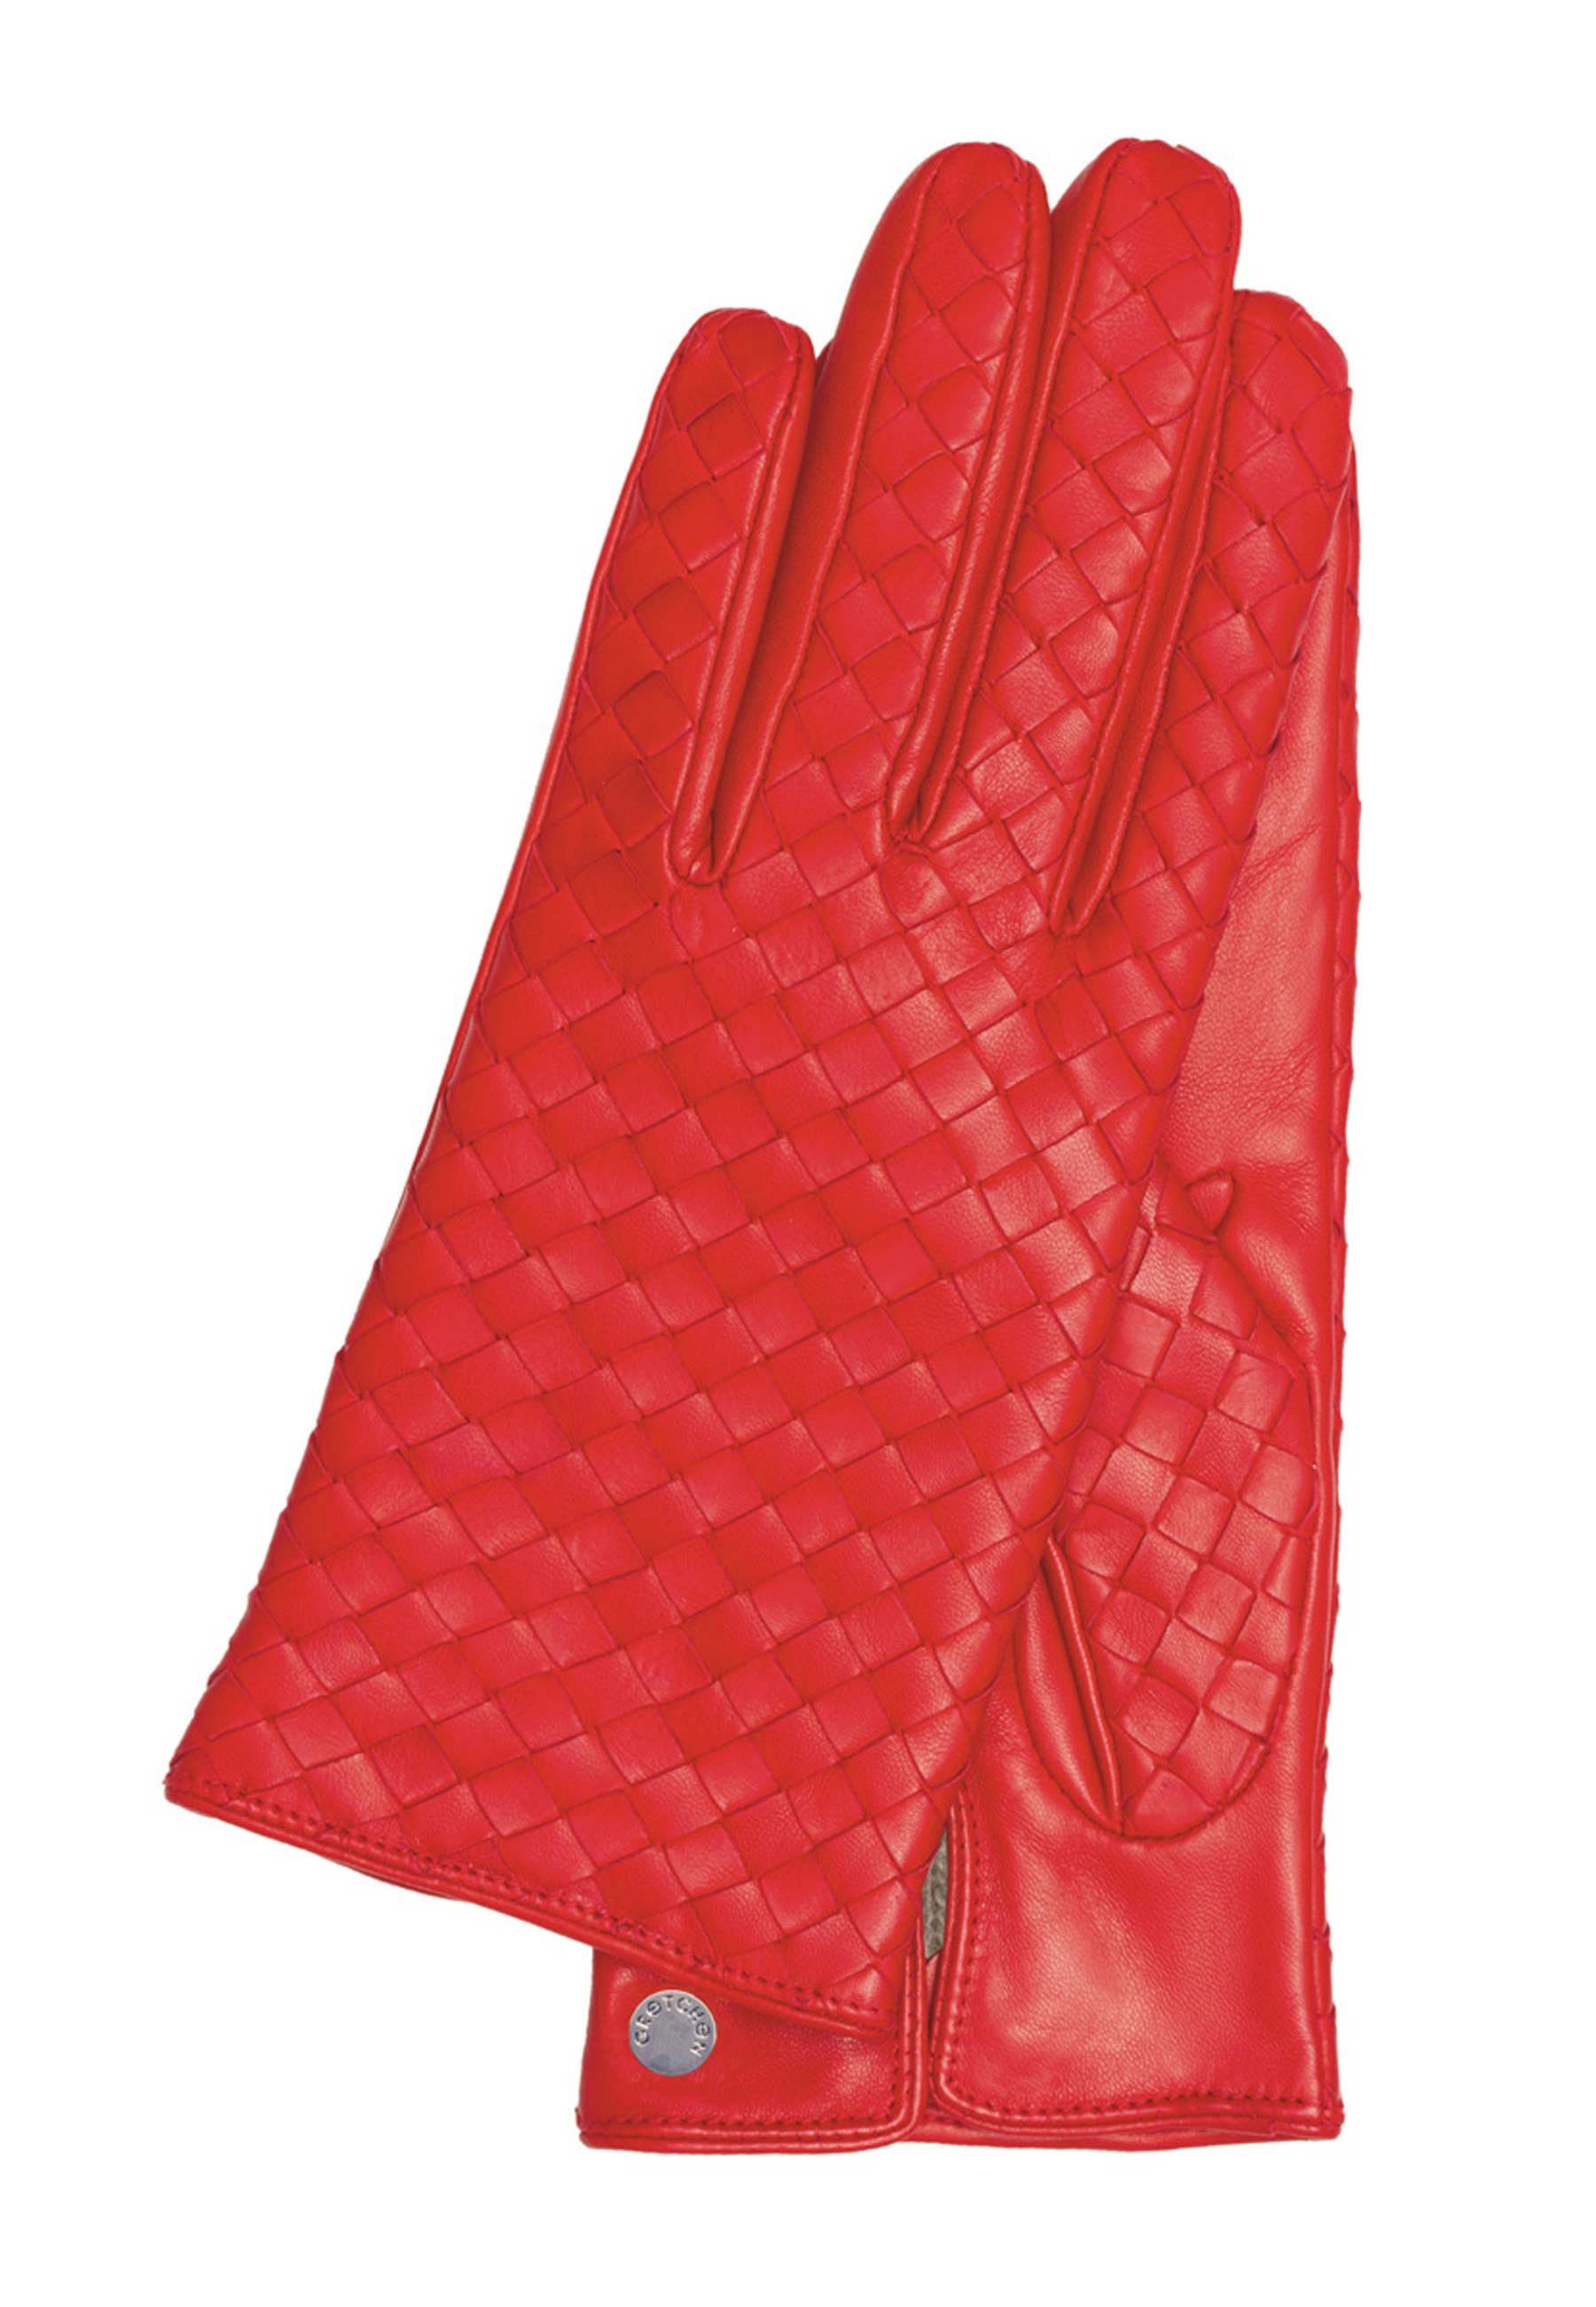 GRETCHEN Lederhandschuhe Woven Gloves mit Flechtung trendiger rot